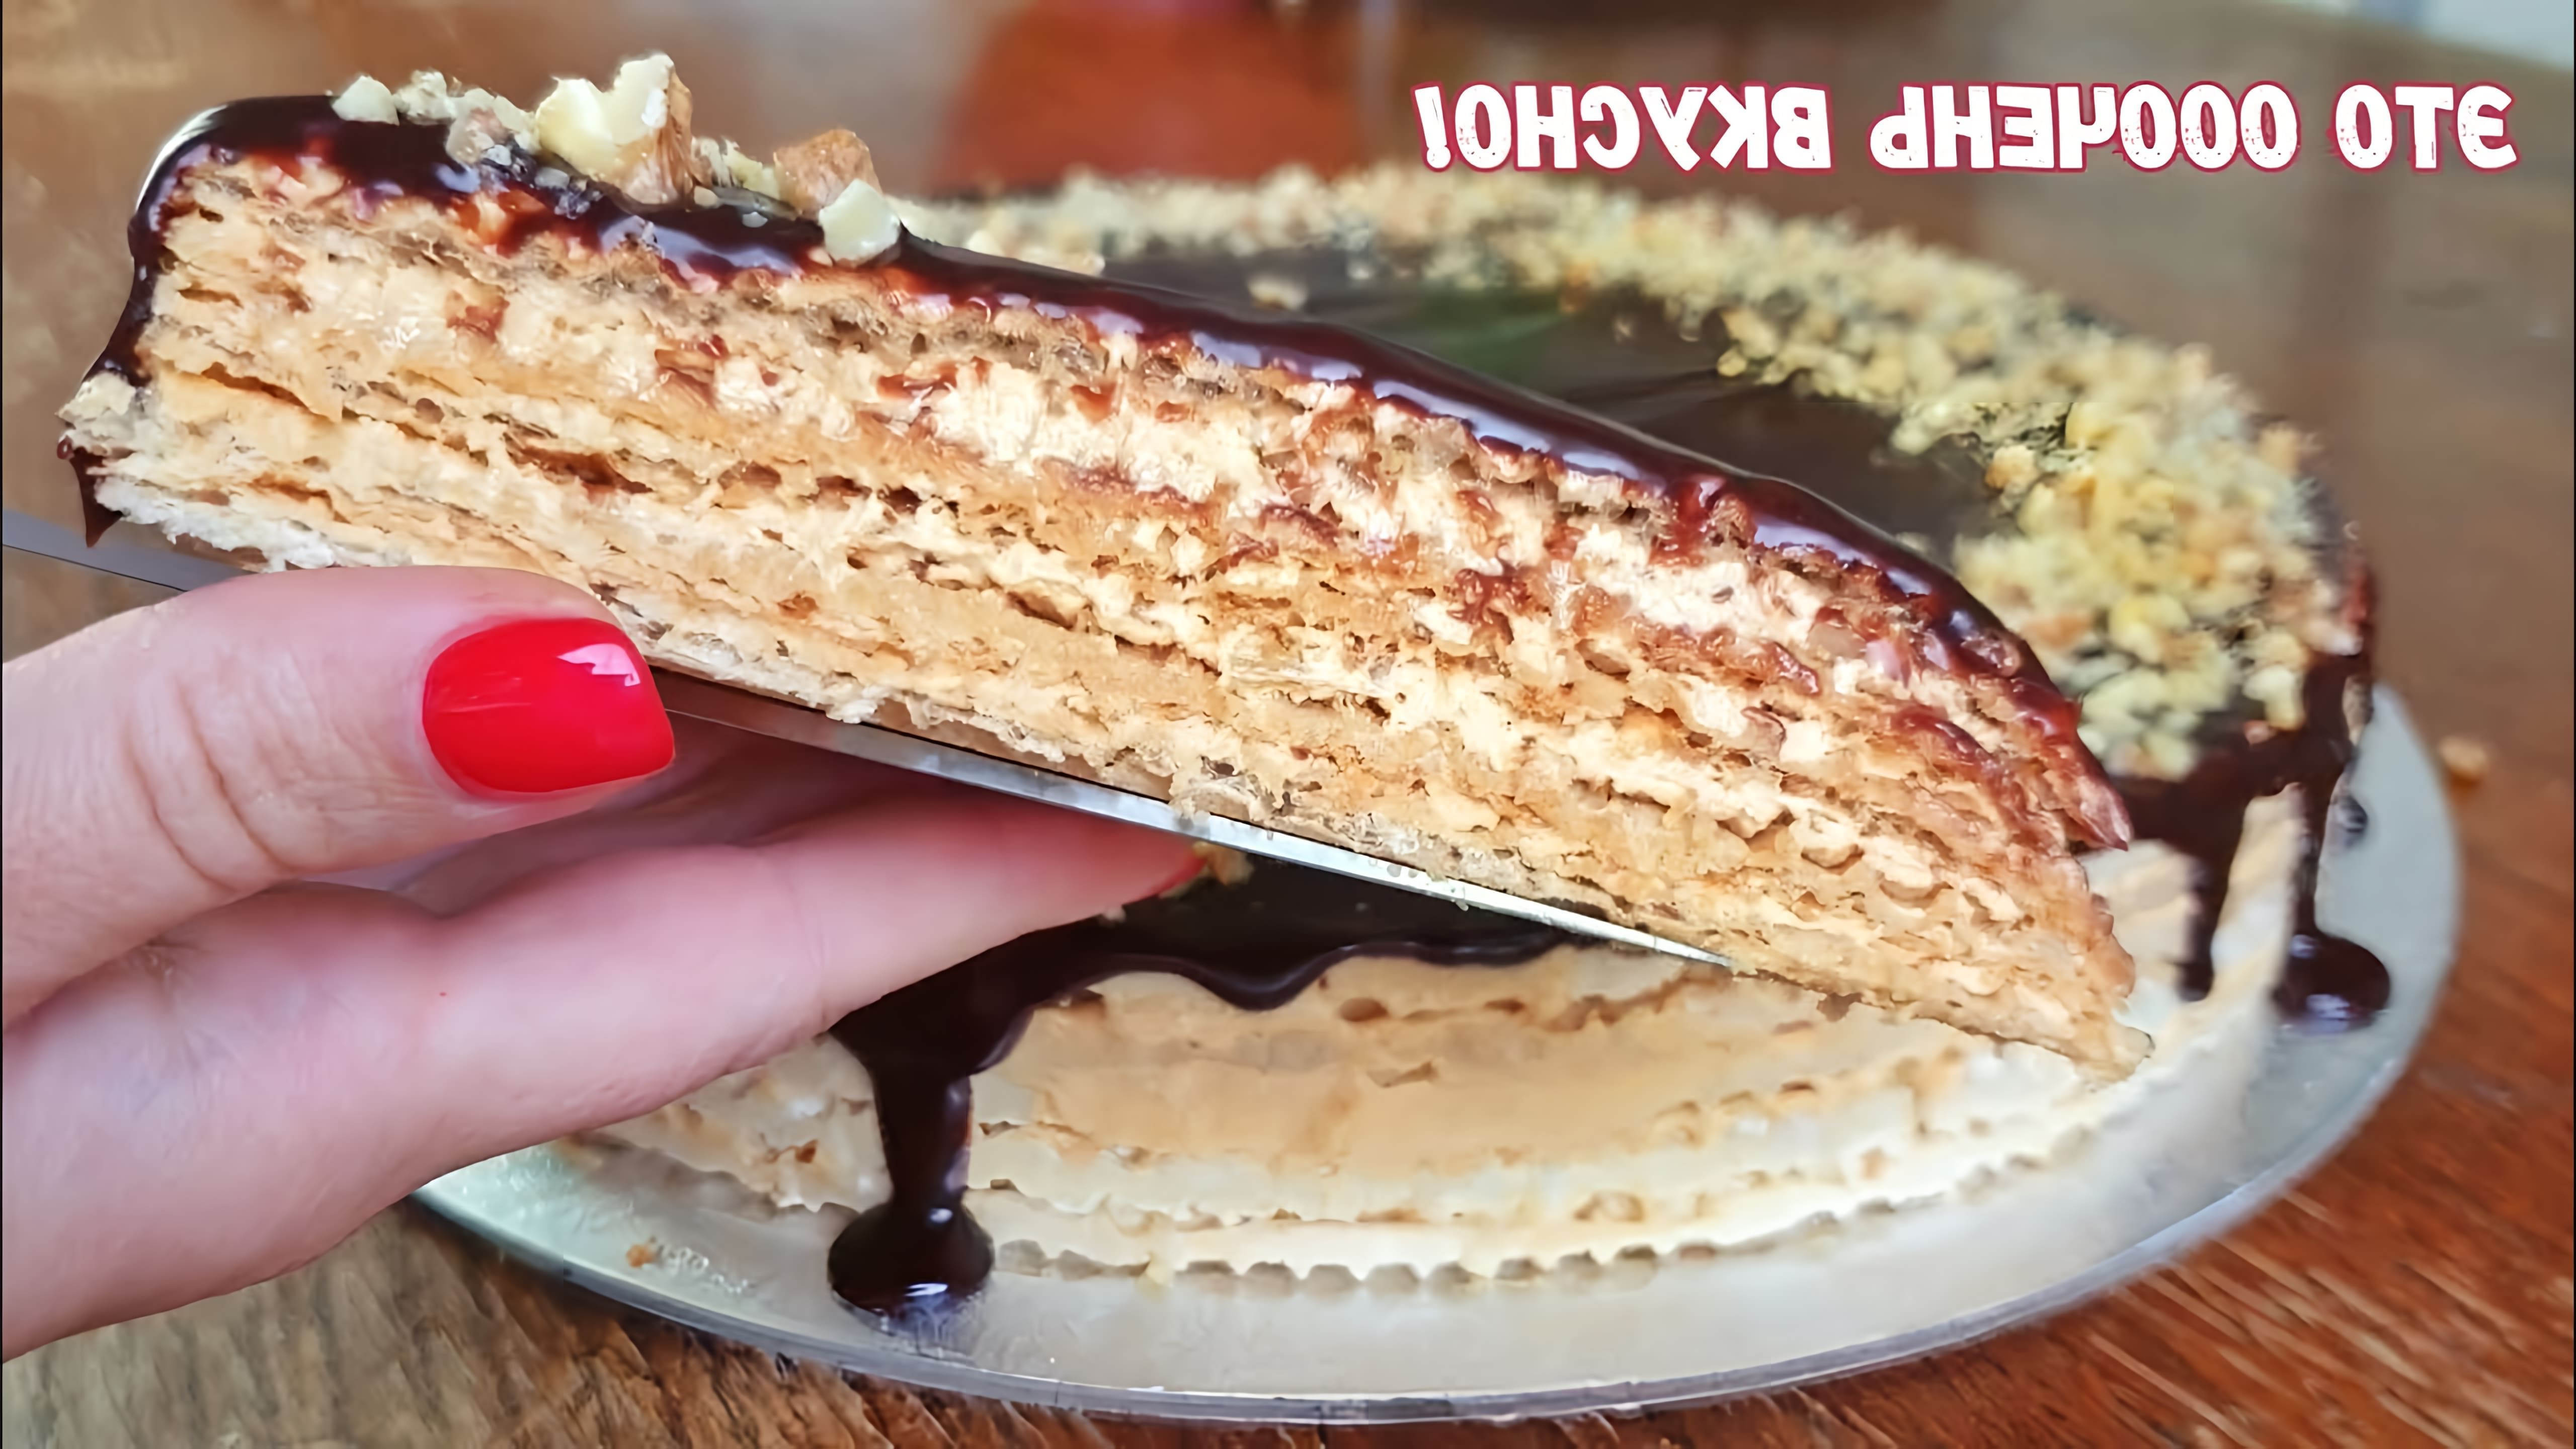 В этом видео-ролике вы увидите, как приготовить вафельный торт со сгущенкой, используя секретный рецепт